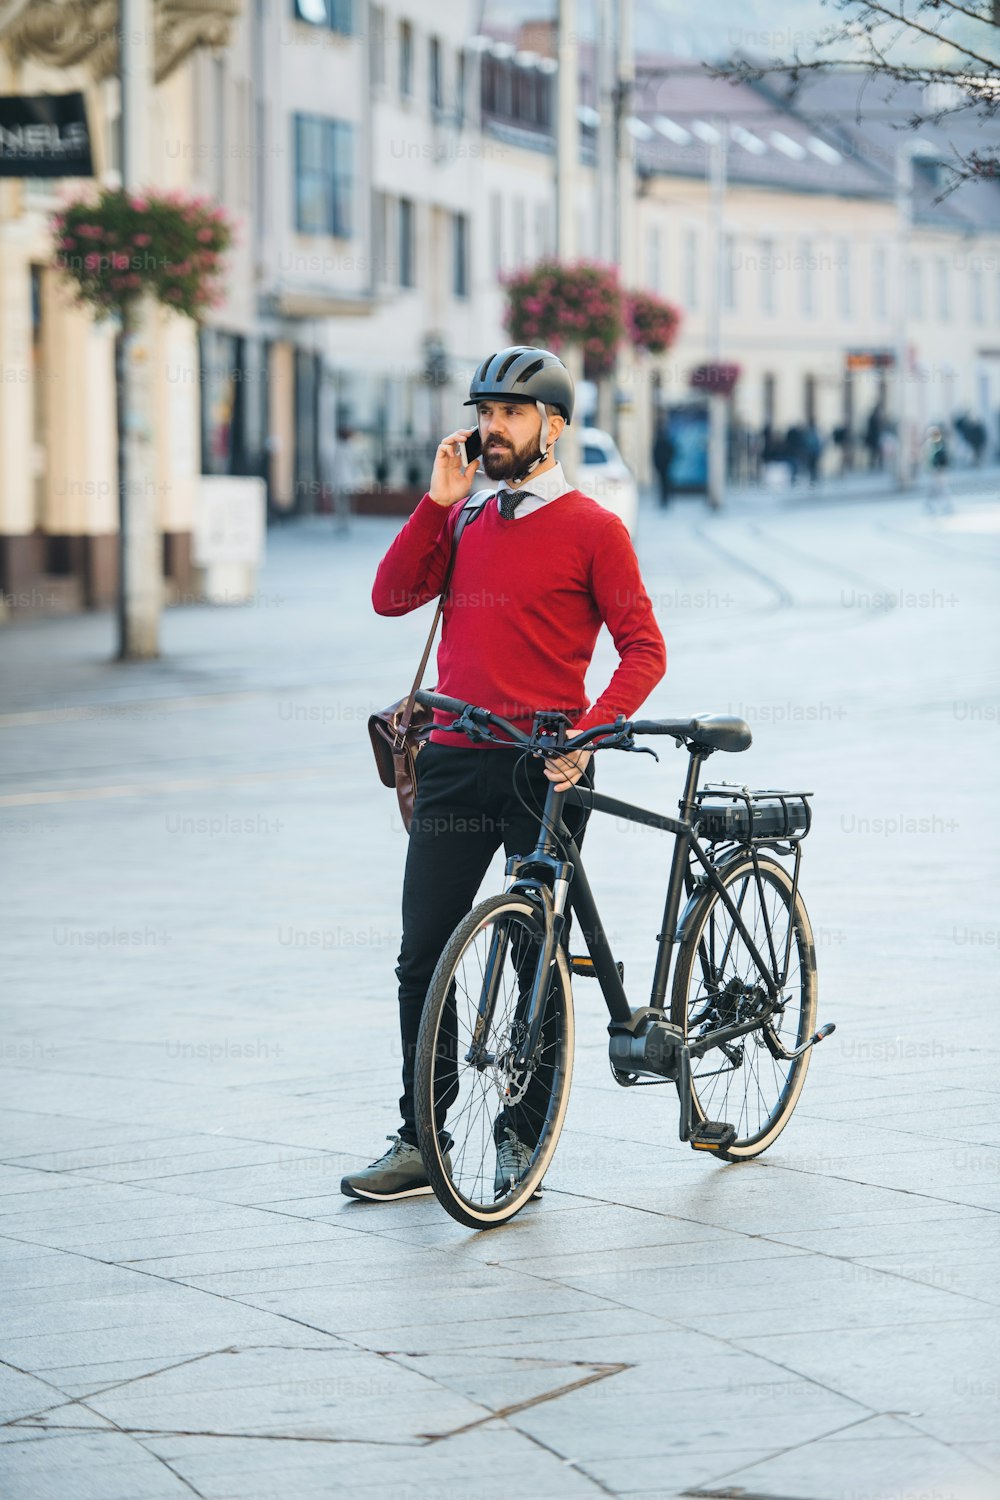 힙스터 사업가는 시내로 출근하는 길에 자전거를 타고 스마트폰을 사용하며 서 있다.